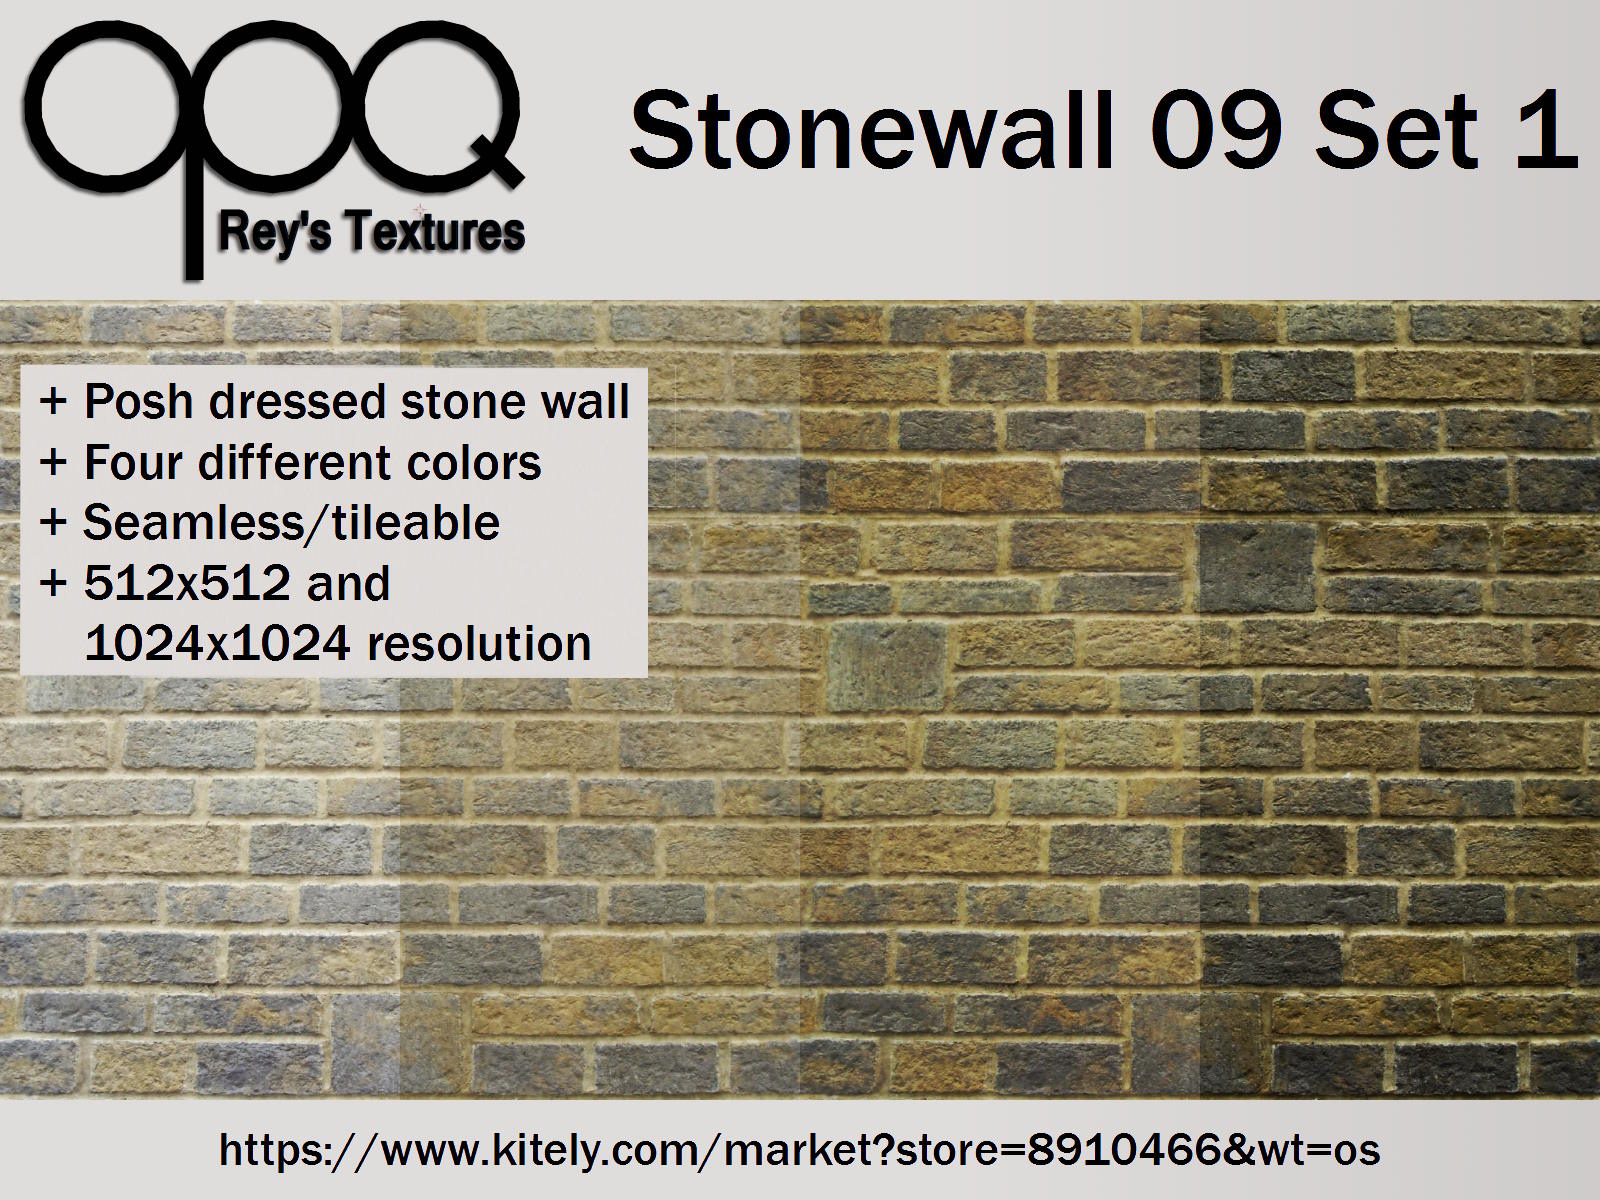 Rey's Stonewall 09 Set 1 Poster Kitely.jpg